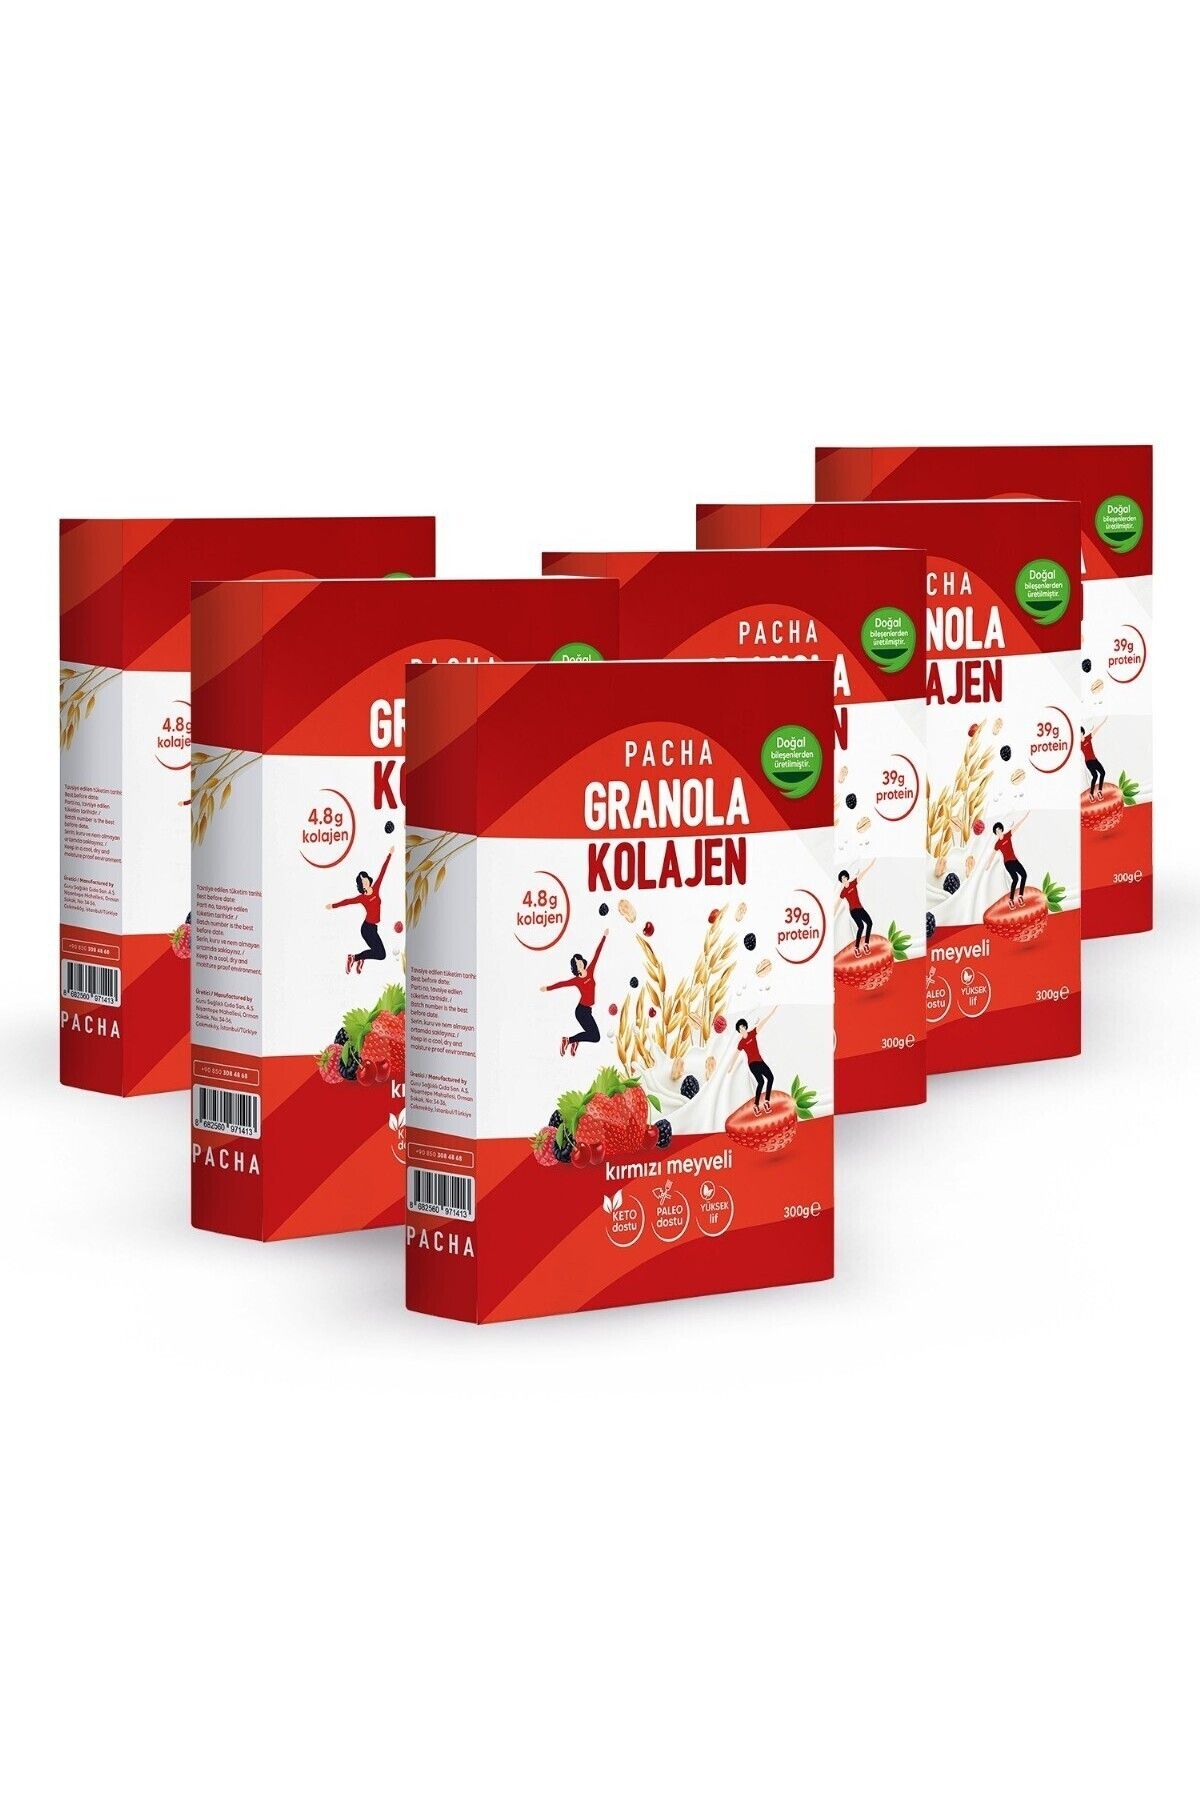 PACHA Doğal Kolajen Ve Proteinli Granola | Kırmızı Meyveli | 6’lı Paket (6 X 300G)